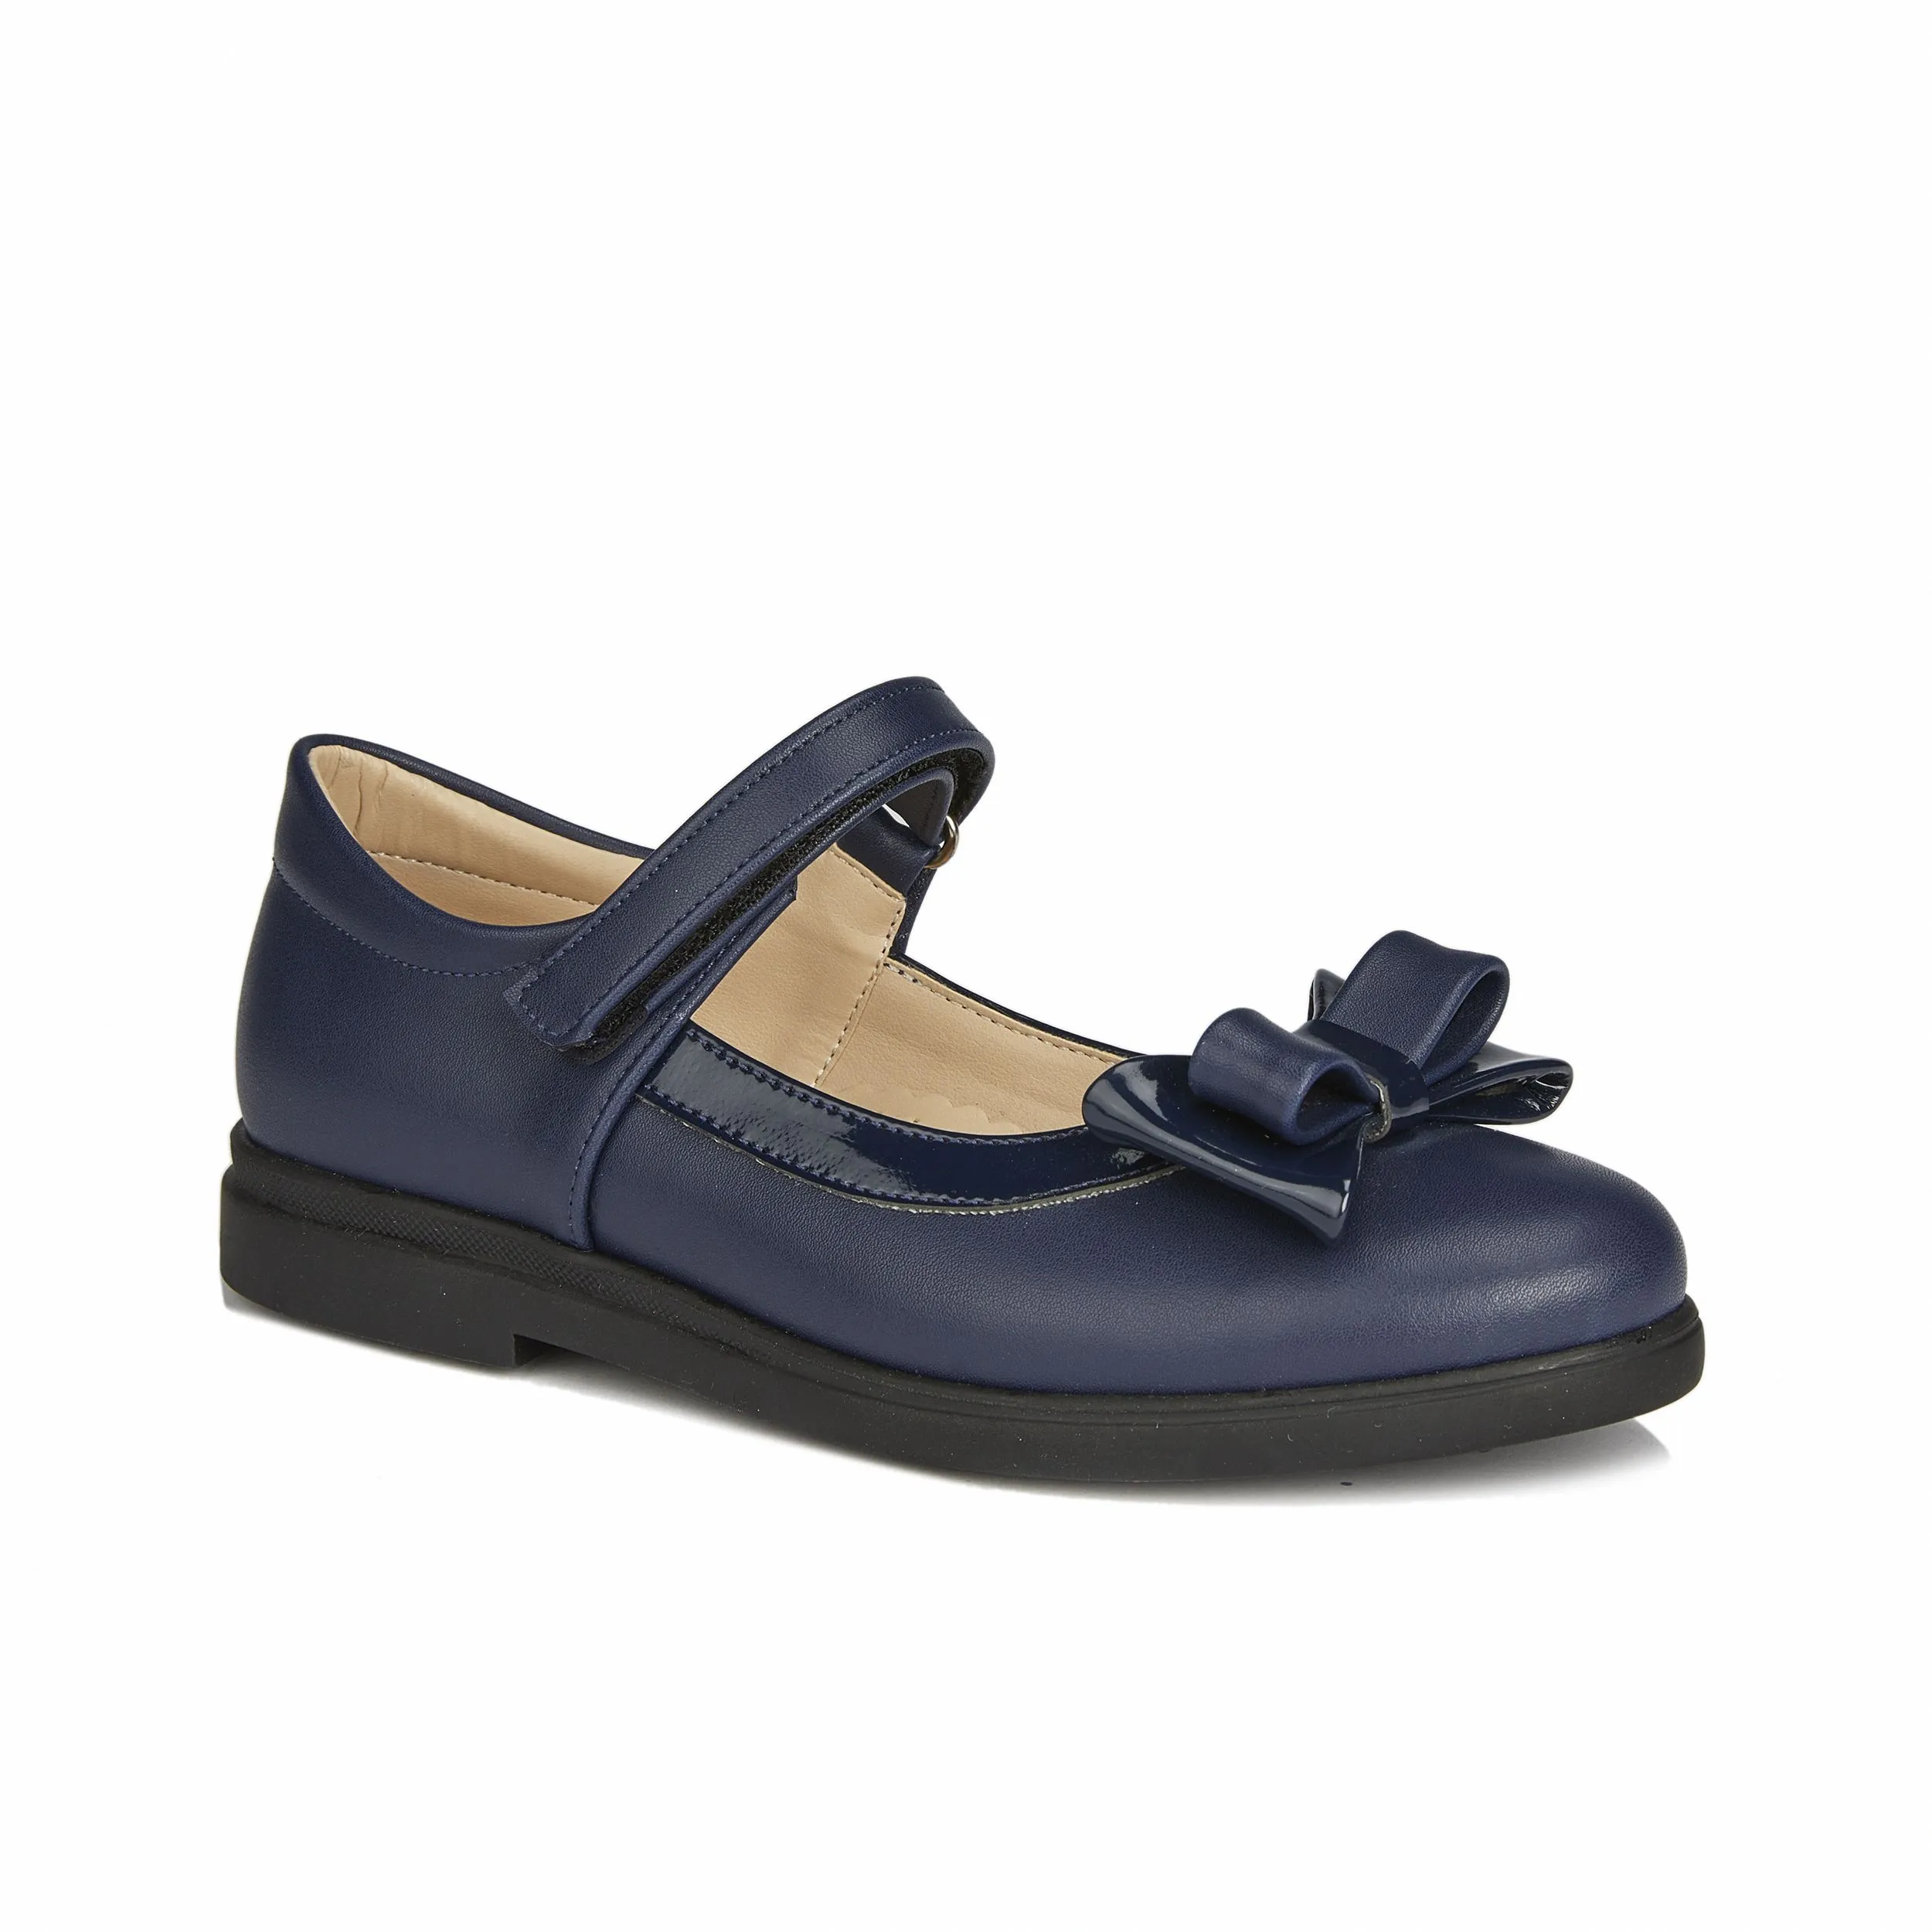 Школьные туфли Stacey II (темно-синие)#1